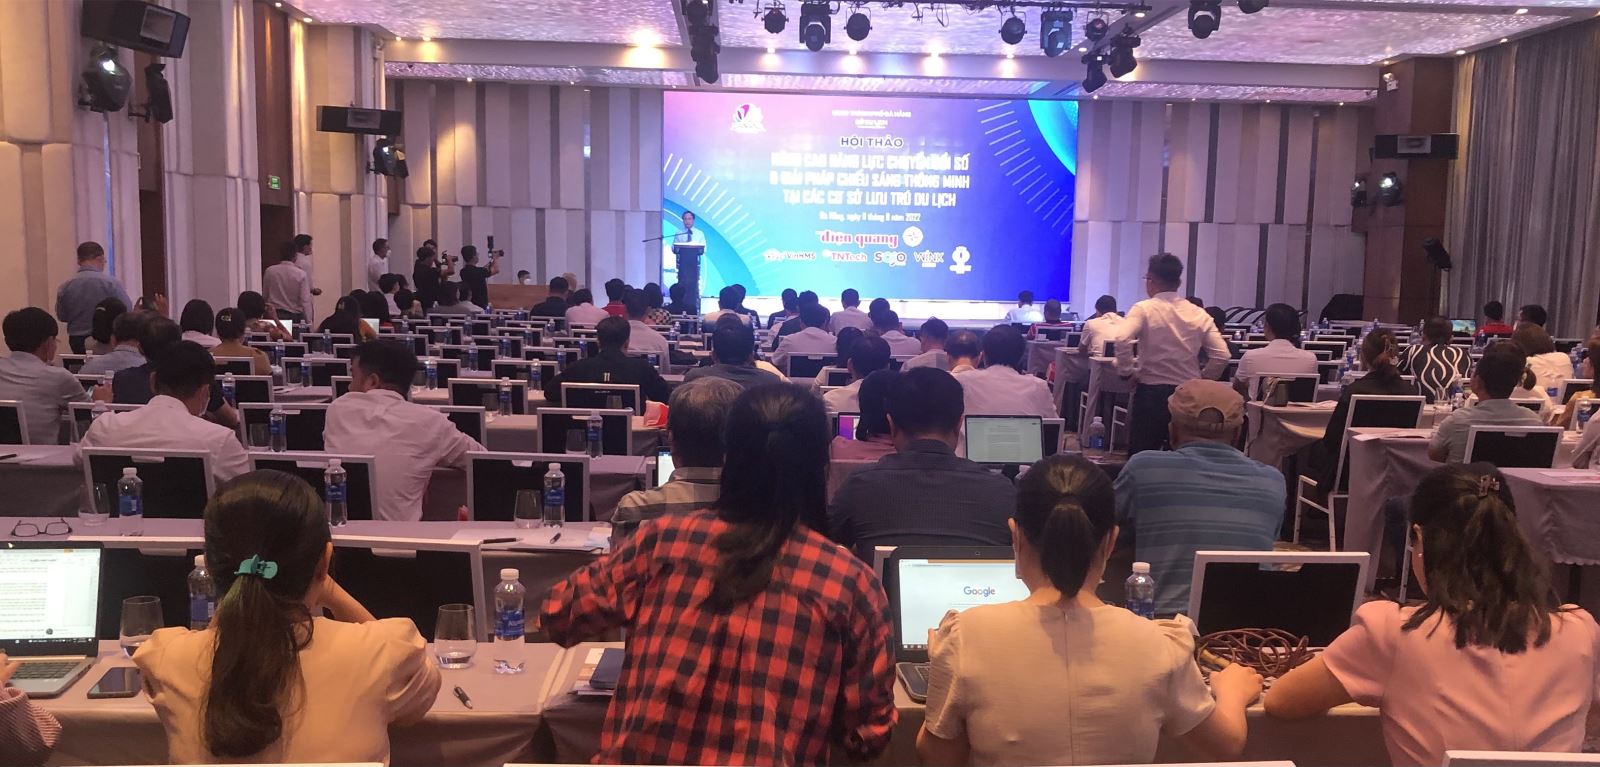 Đà Nẵng: Hội thảo “Nâng cao năng lực chuyển đổi số và giải pháp chiếu sáng thông minh tại cơ sở lưu trú du lịch năm 2022”